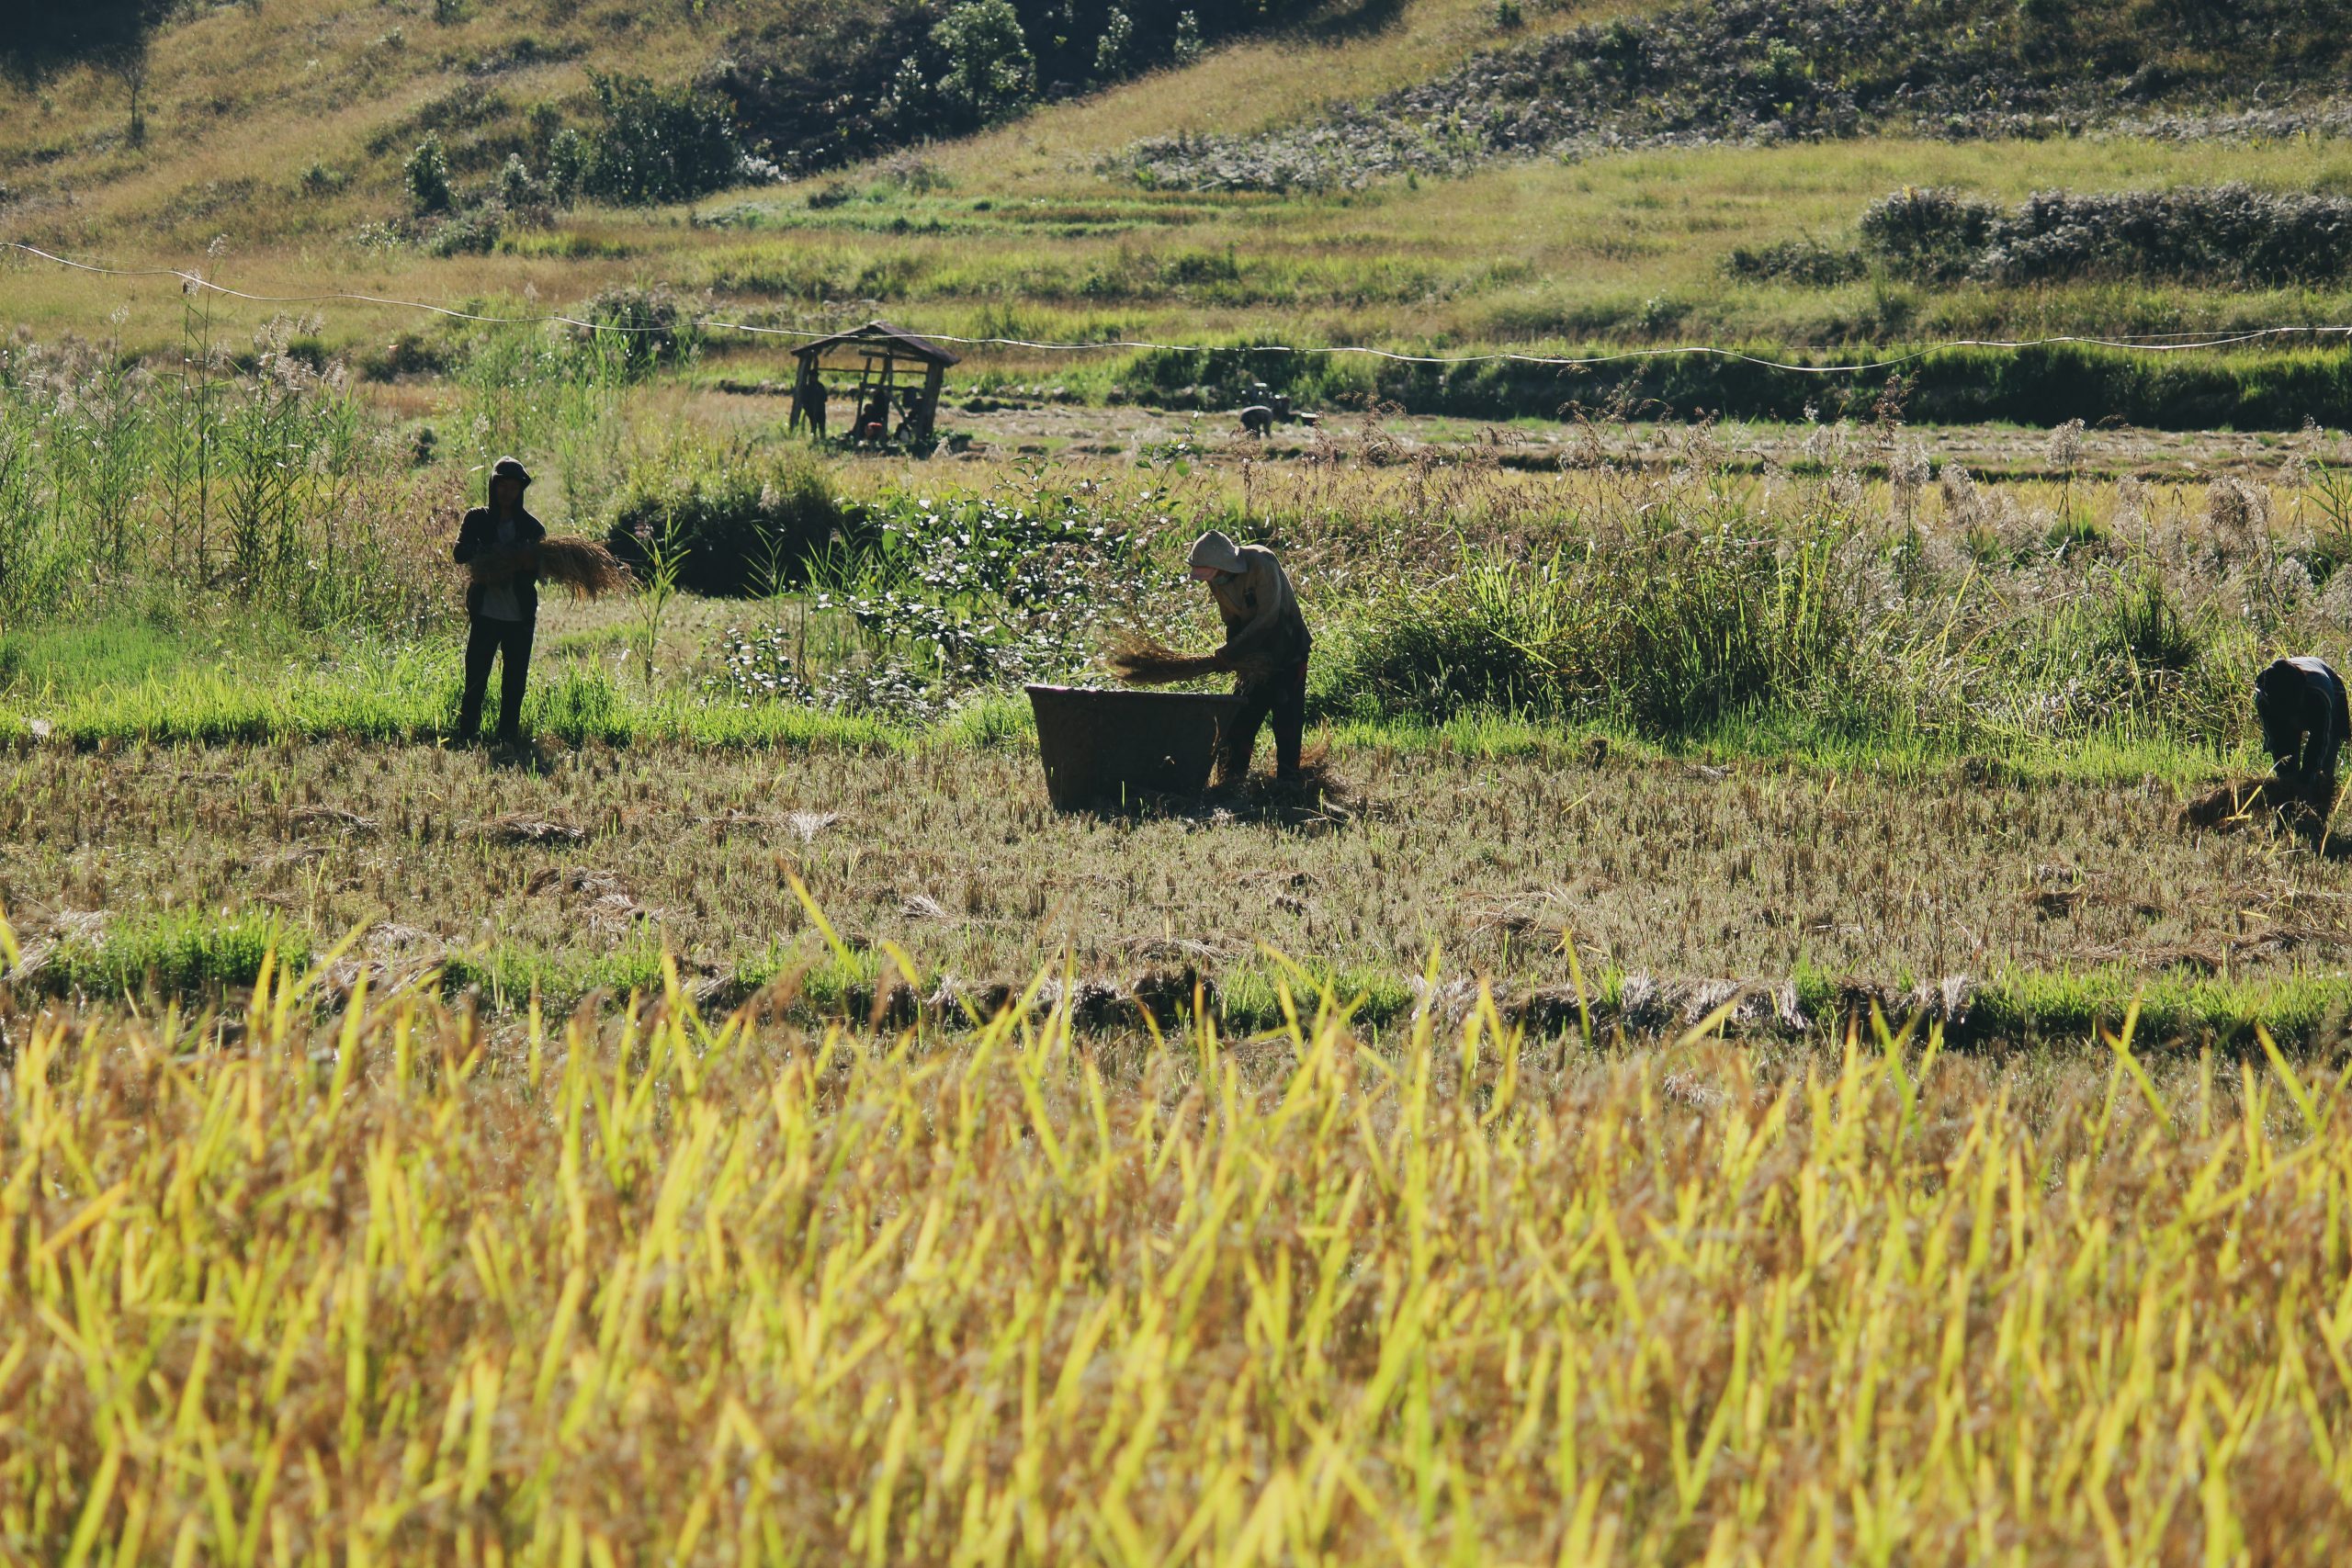 Farmers in the field